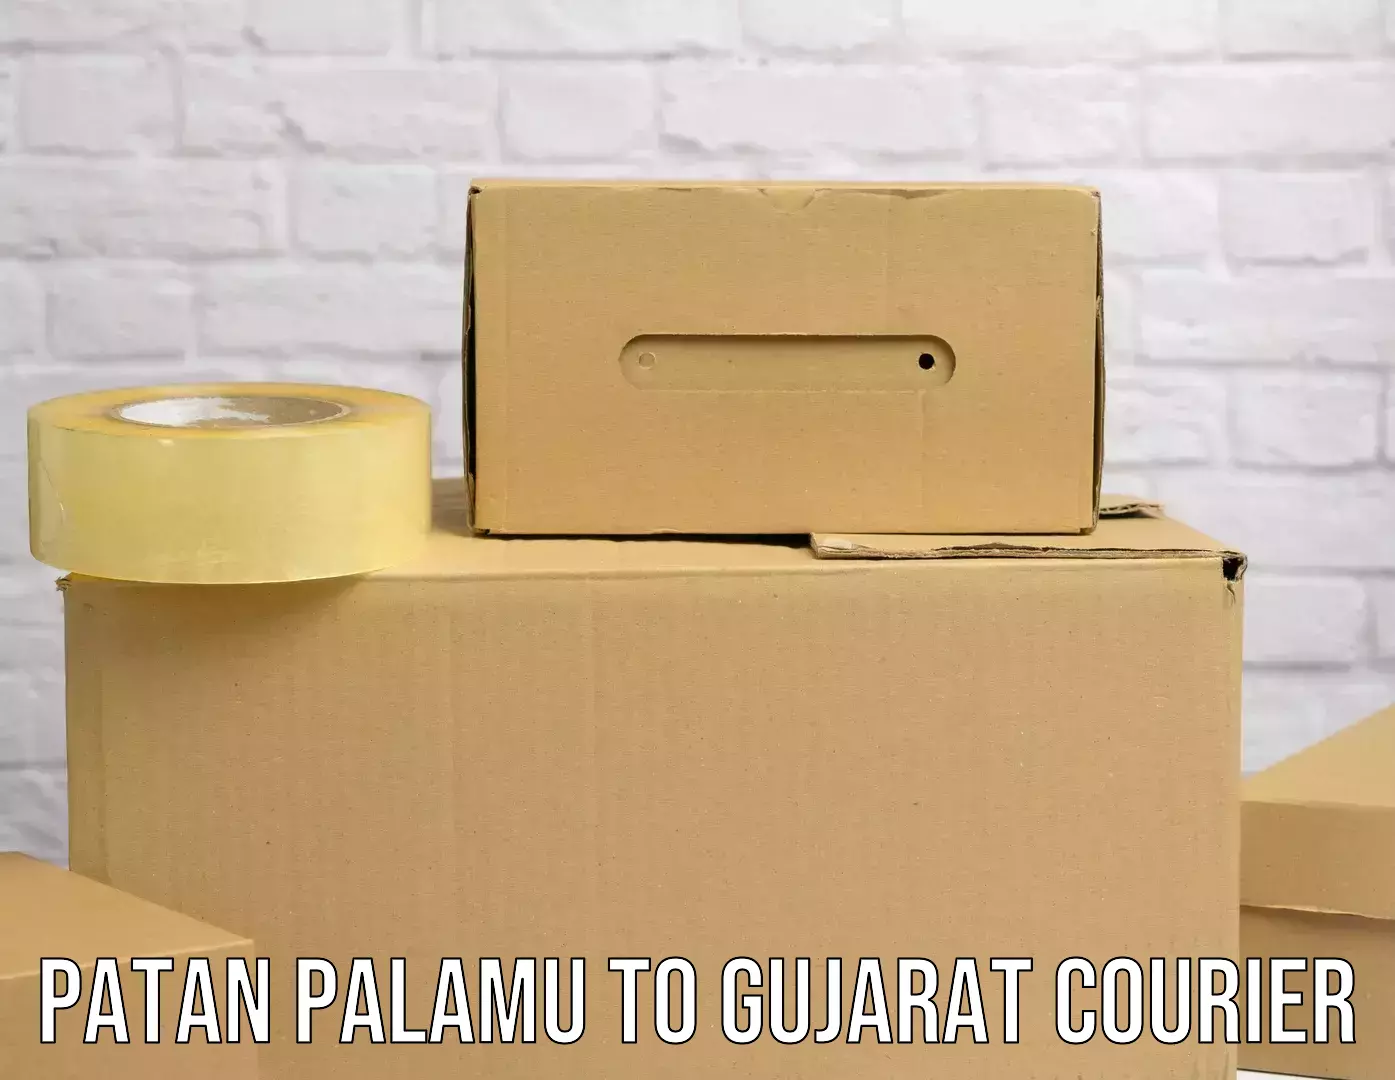 Customizable shipping options Patan Palamu to Gujarat